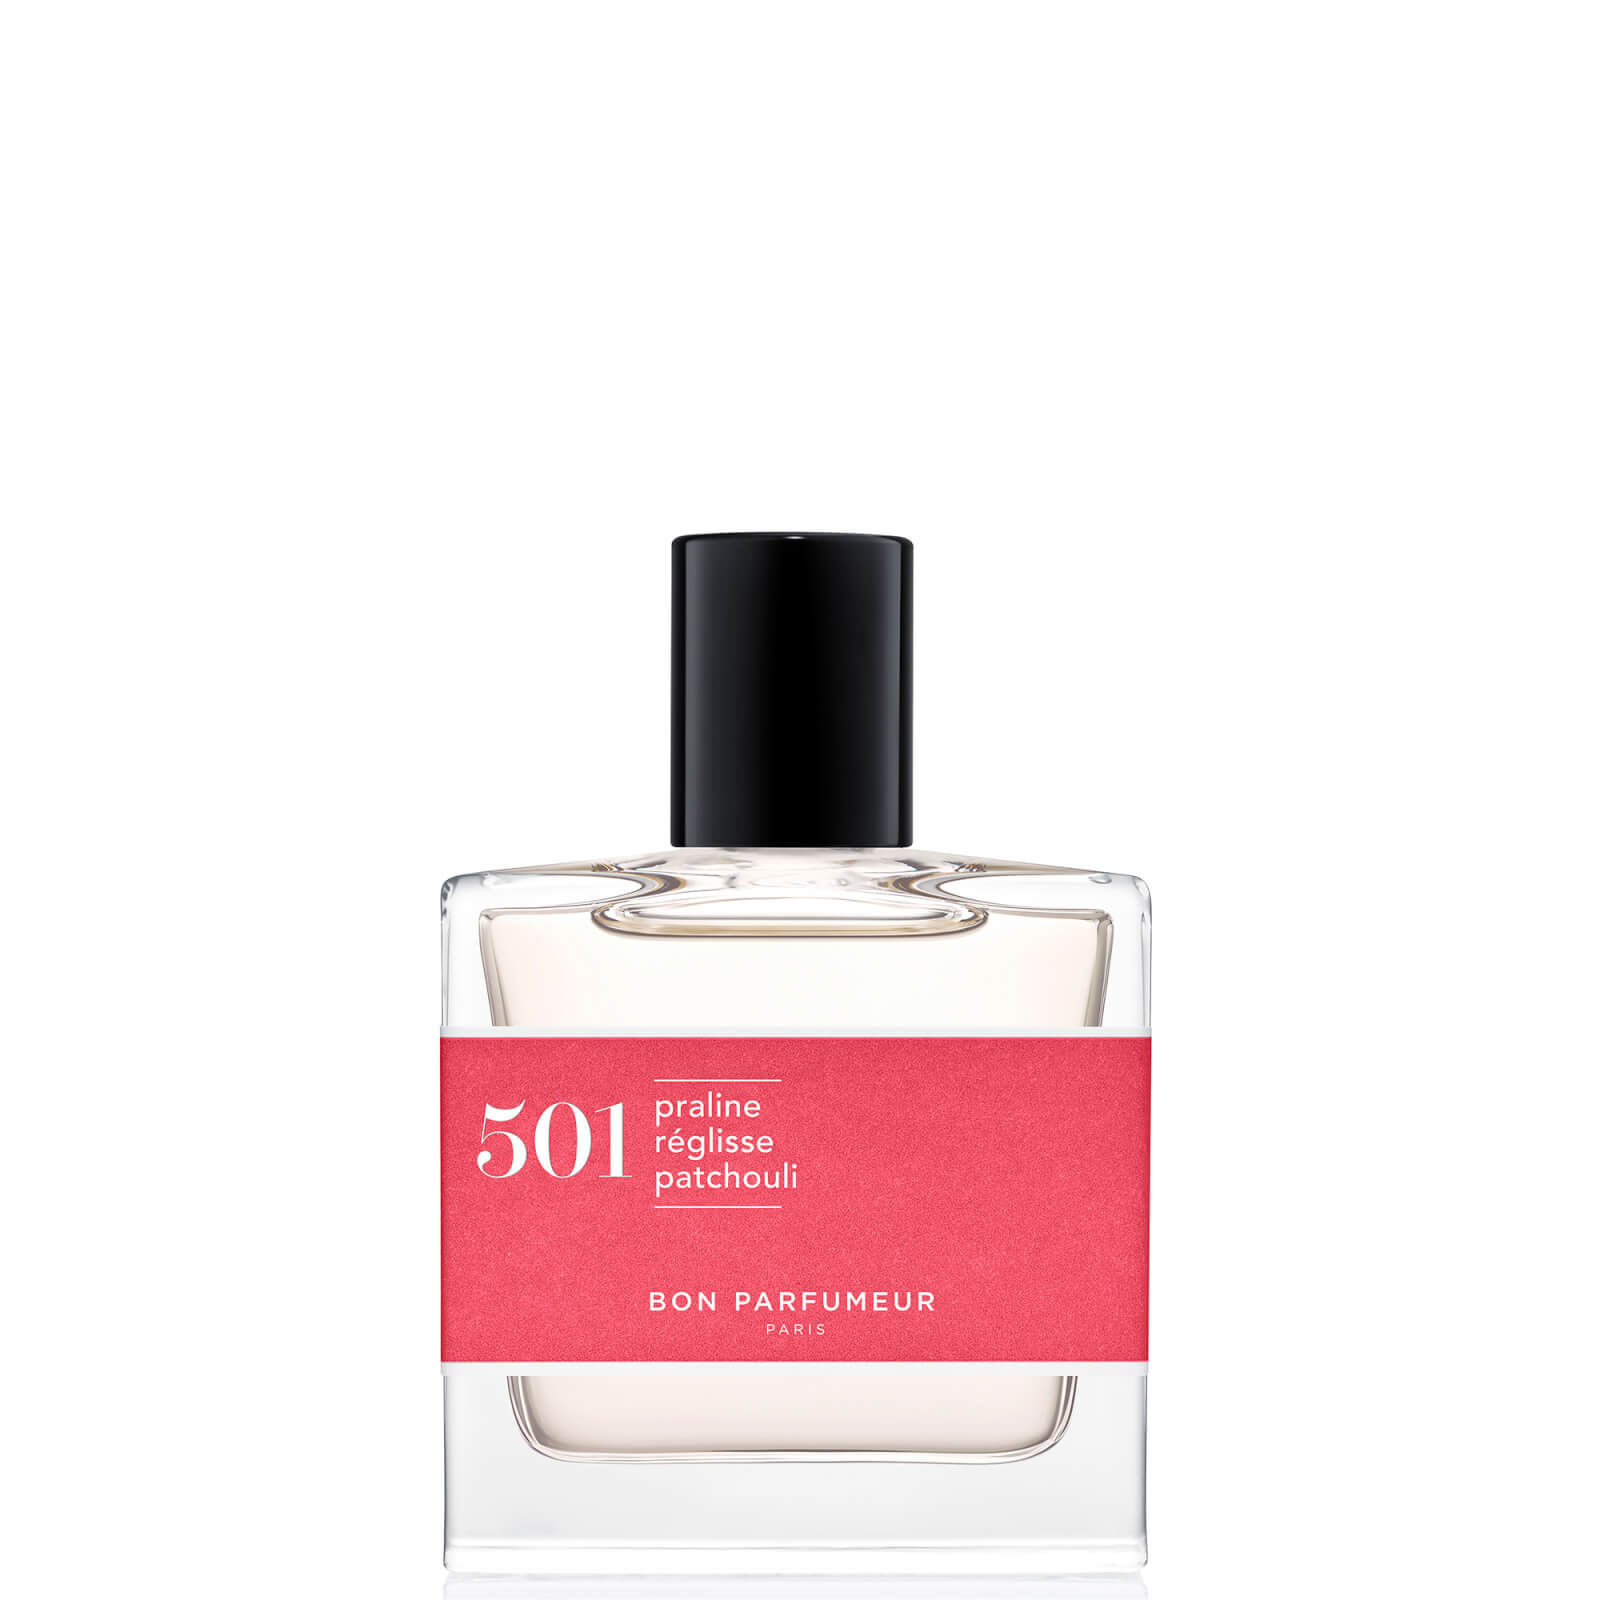 Image of Bon Parfumeur 501 Praline Licorice Patchouli Eau de Parfum Profumo - 30ml